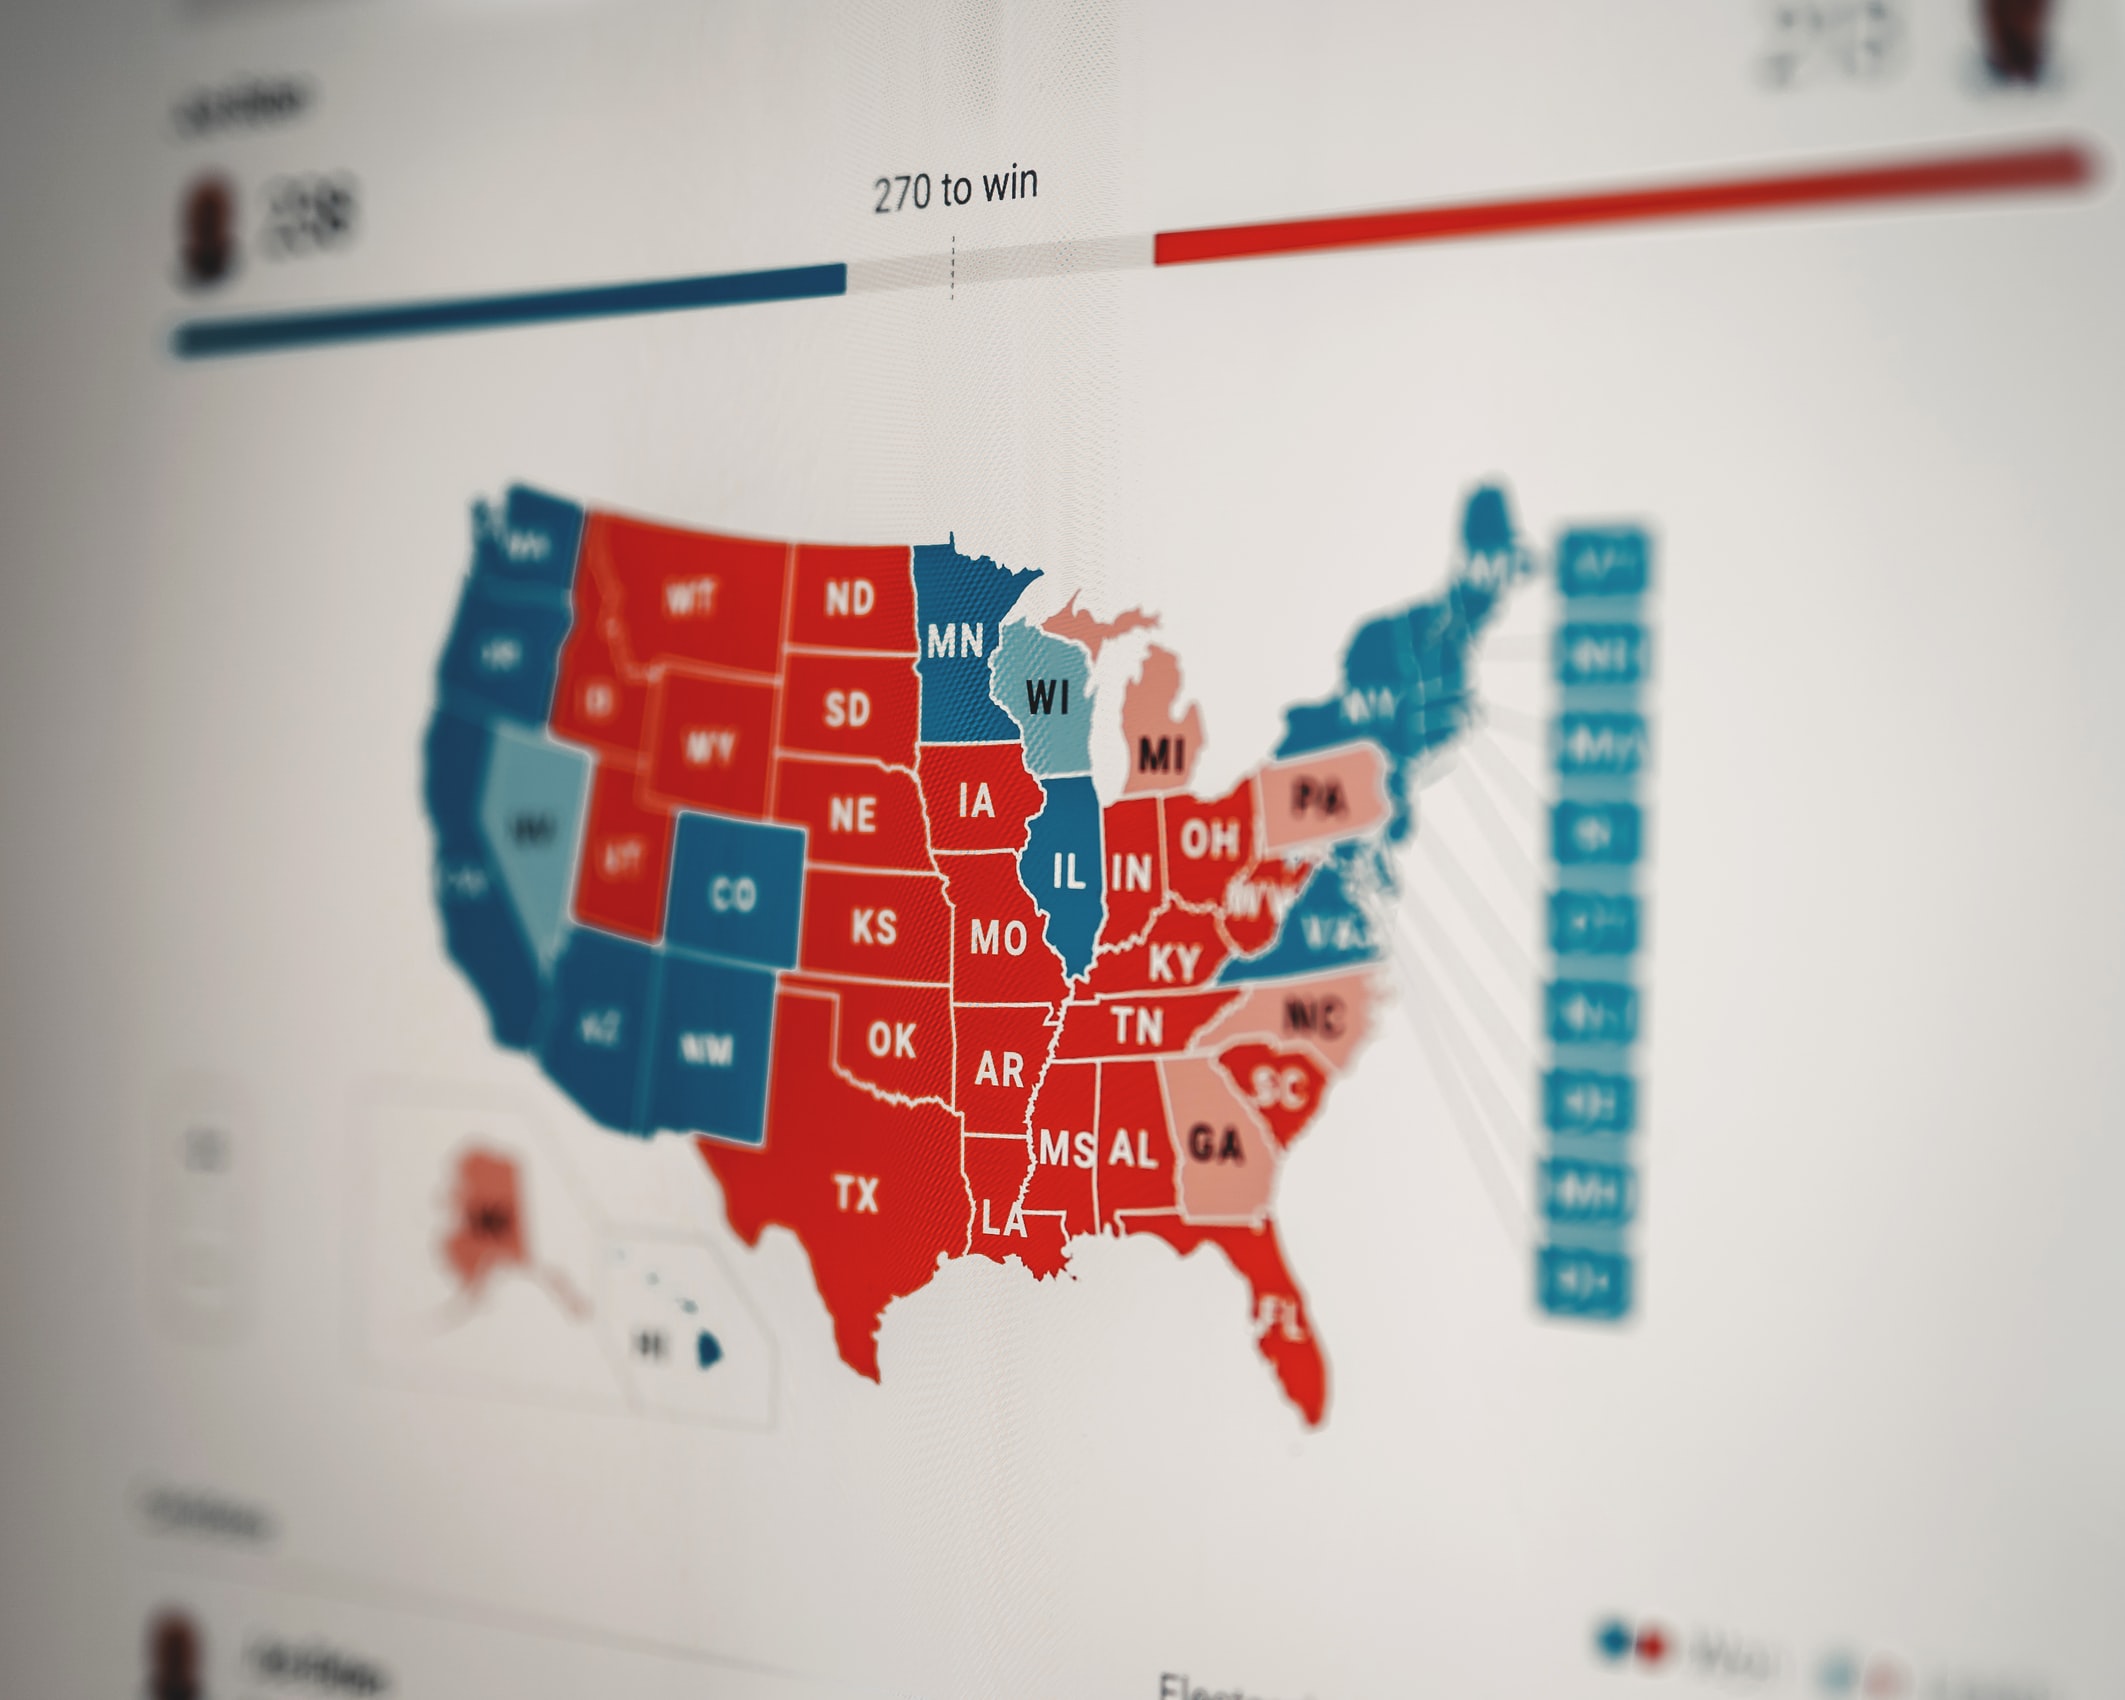 #USA2020 Des élections historiques. Et maintenant? Quels défis et opportunités pour la gauche américaine?